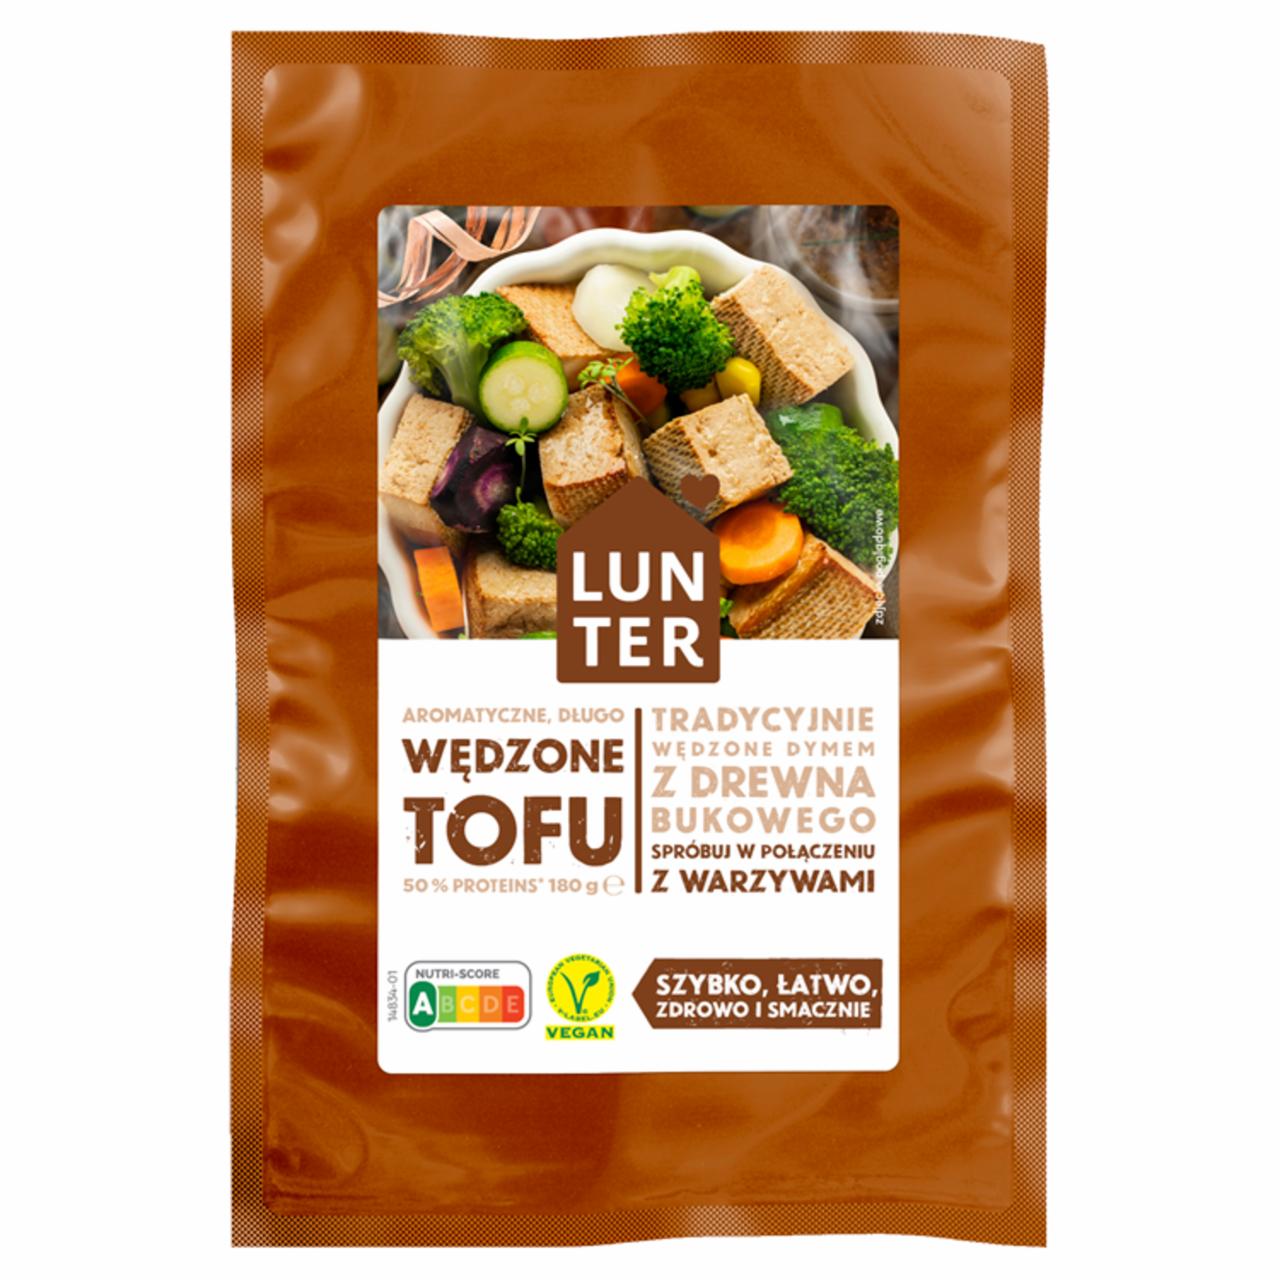 Zdjęcia - Lunter Tofu wędzone 180 g